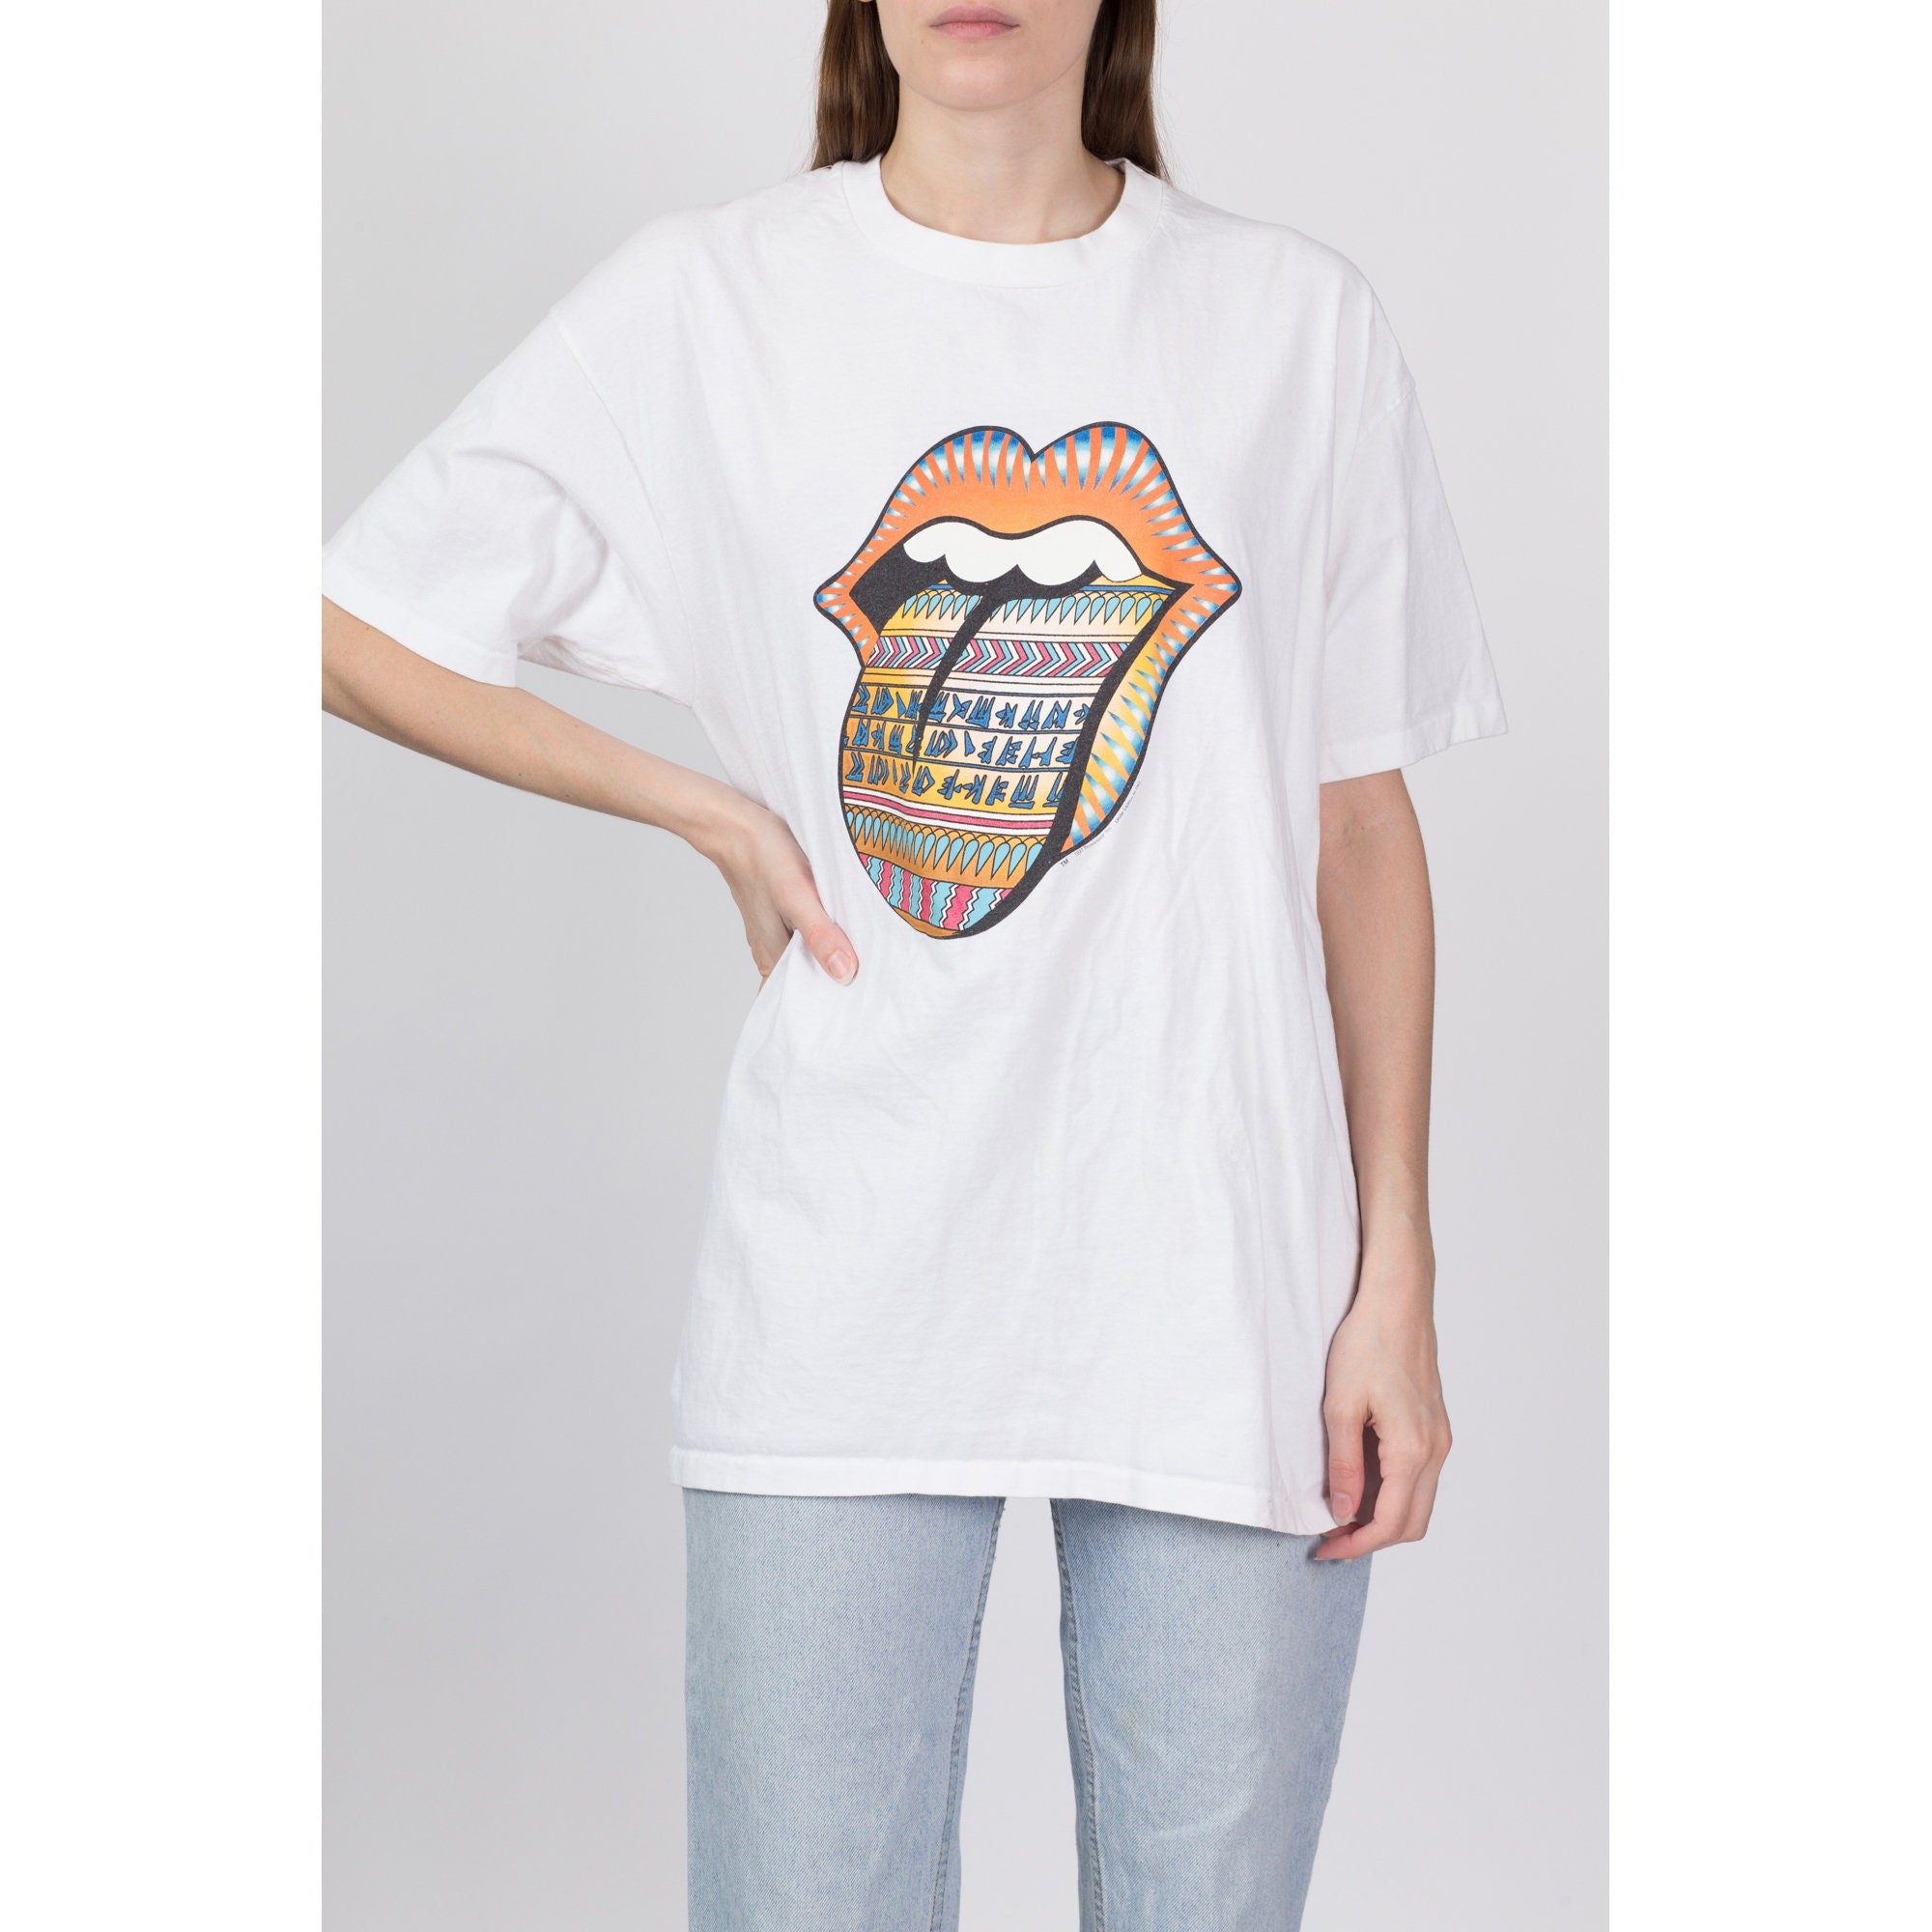 1997 Rolling Stones Bridges To Babylon Tour T Shirt - Men's